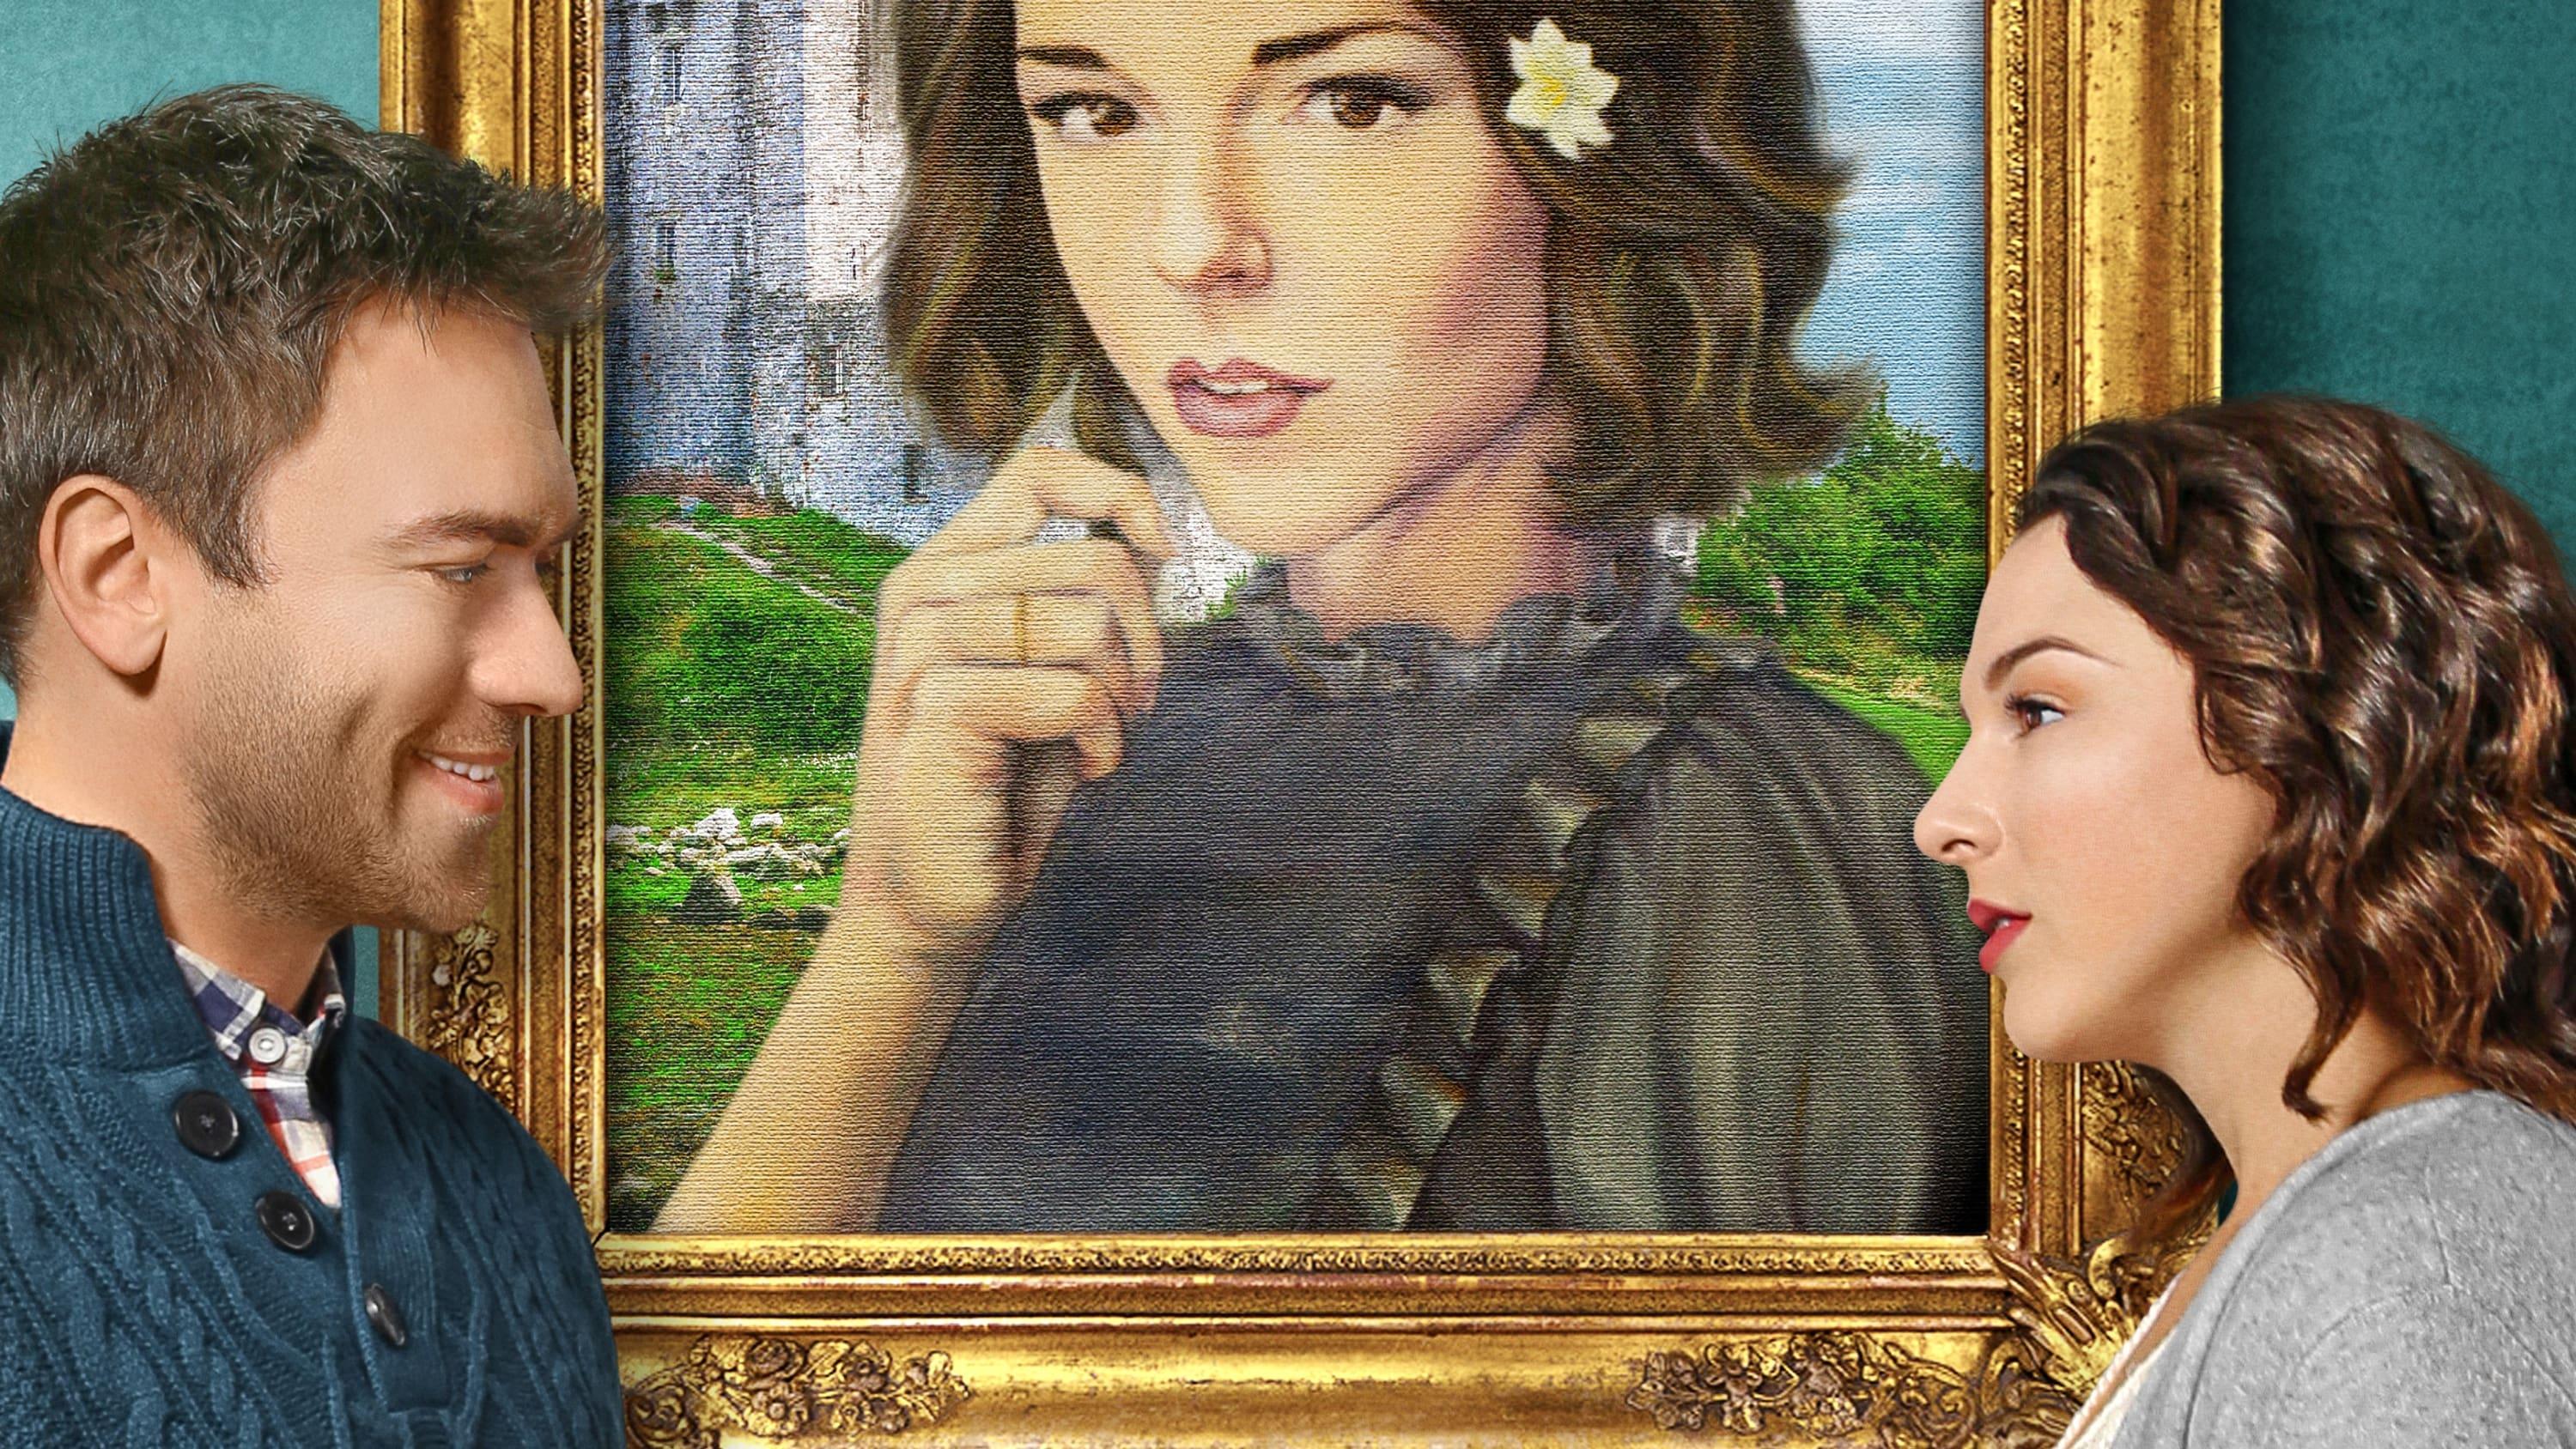 Love's Portrait backdrop